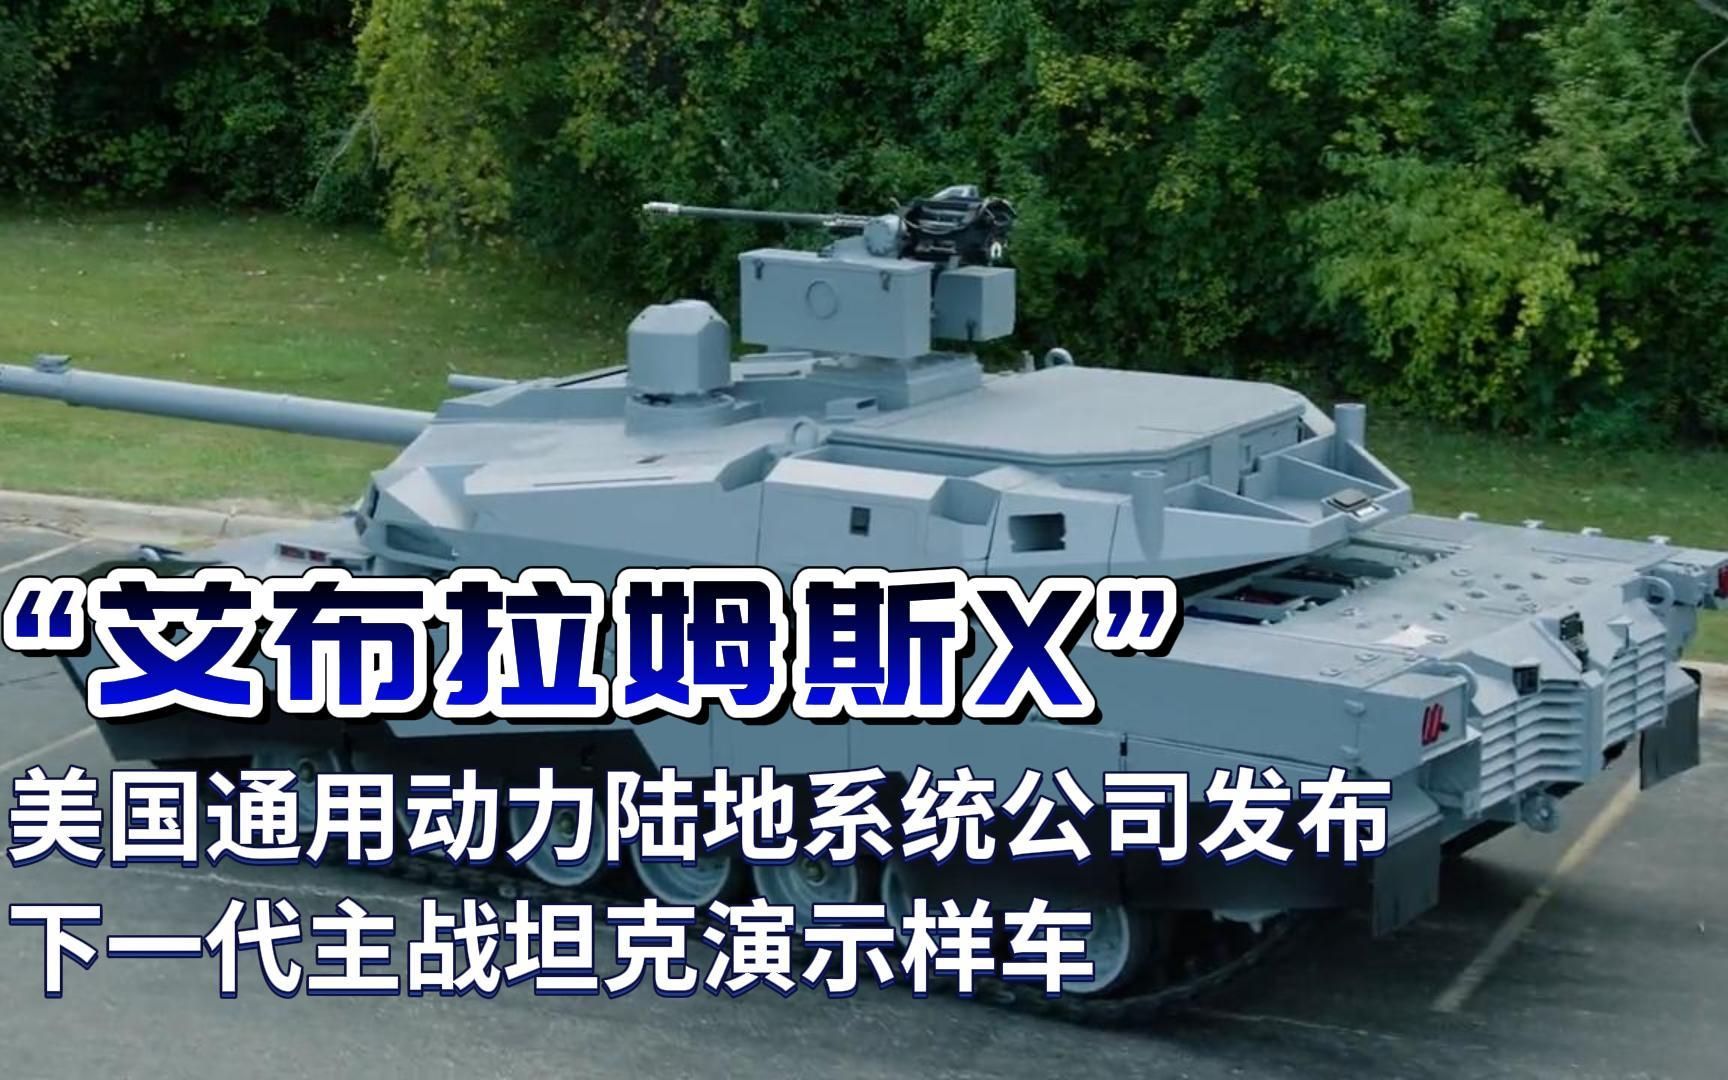 “艾布拉姆斯X”——美国通用动力陆地系统公司发布下一代主战坦克演示样车